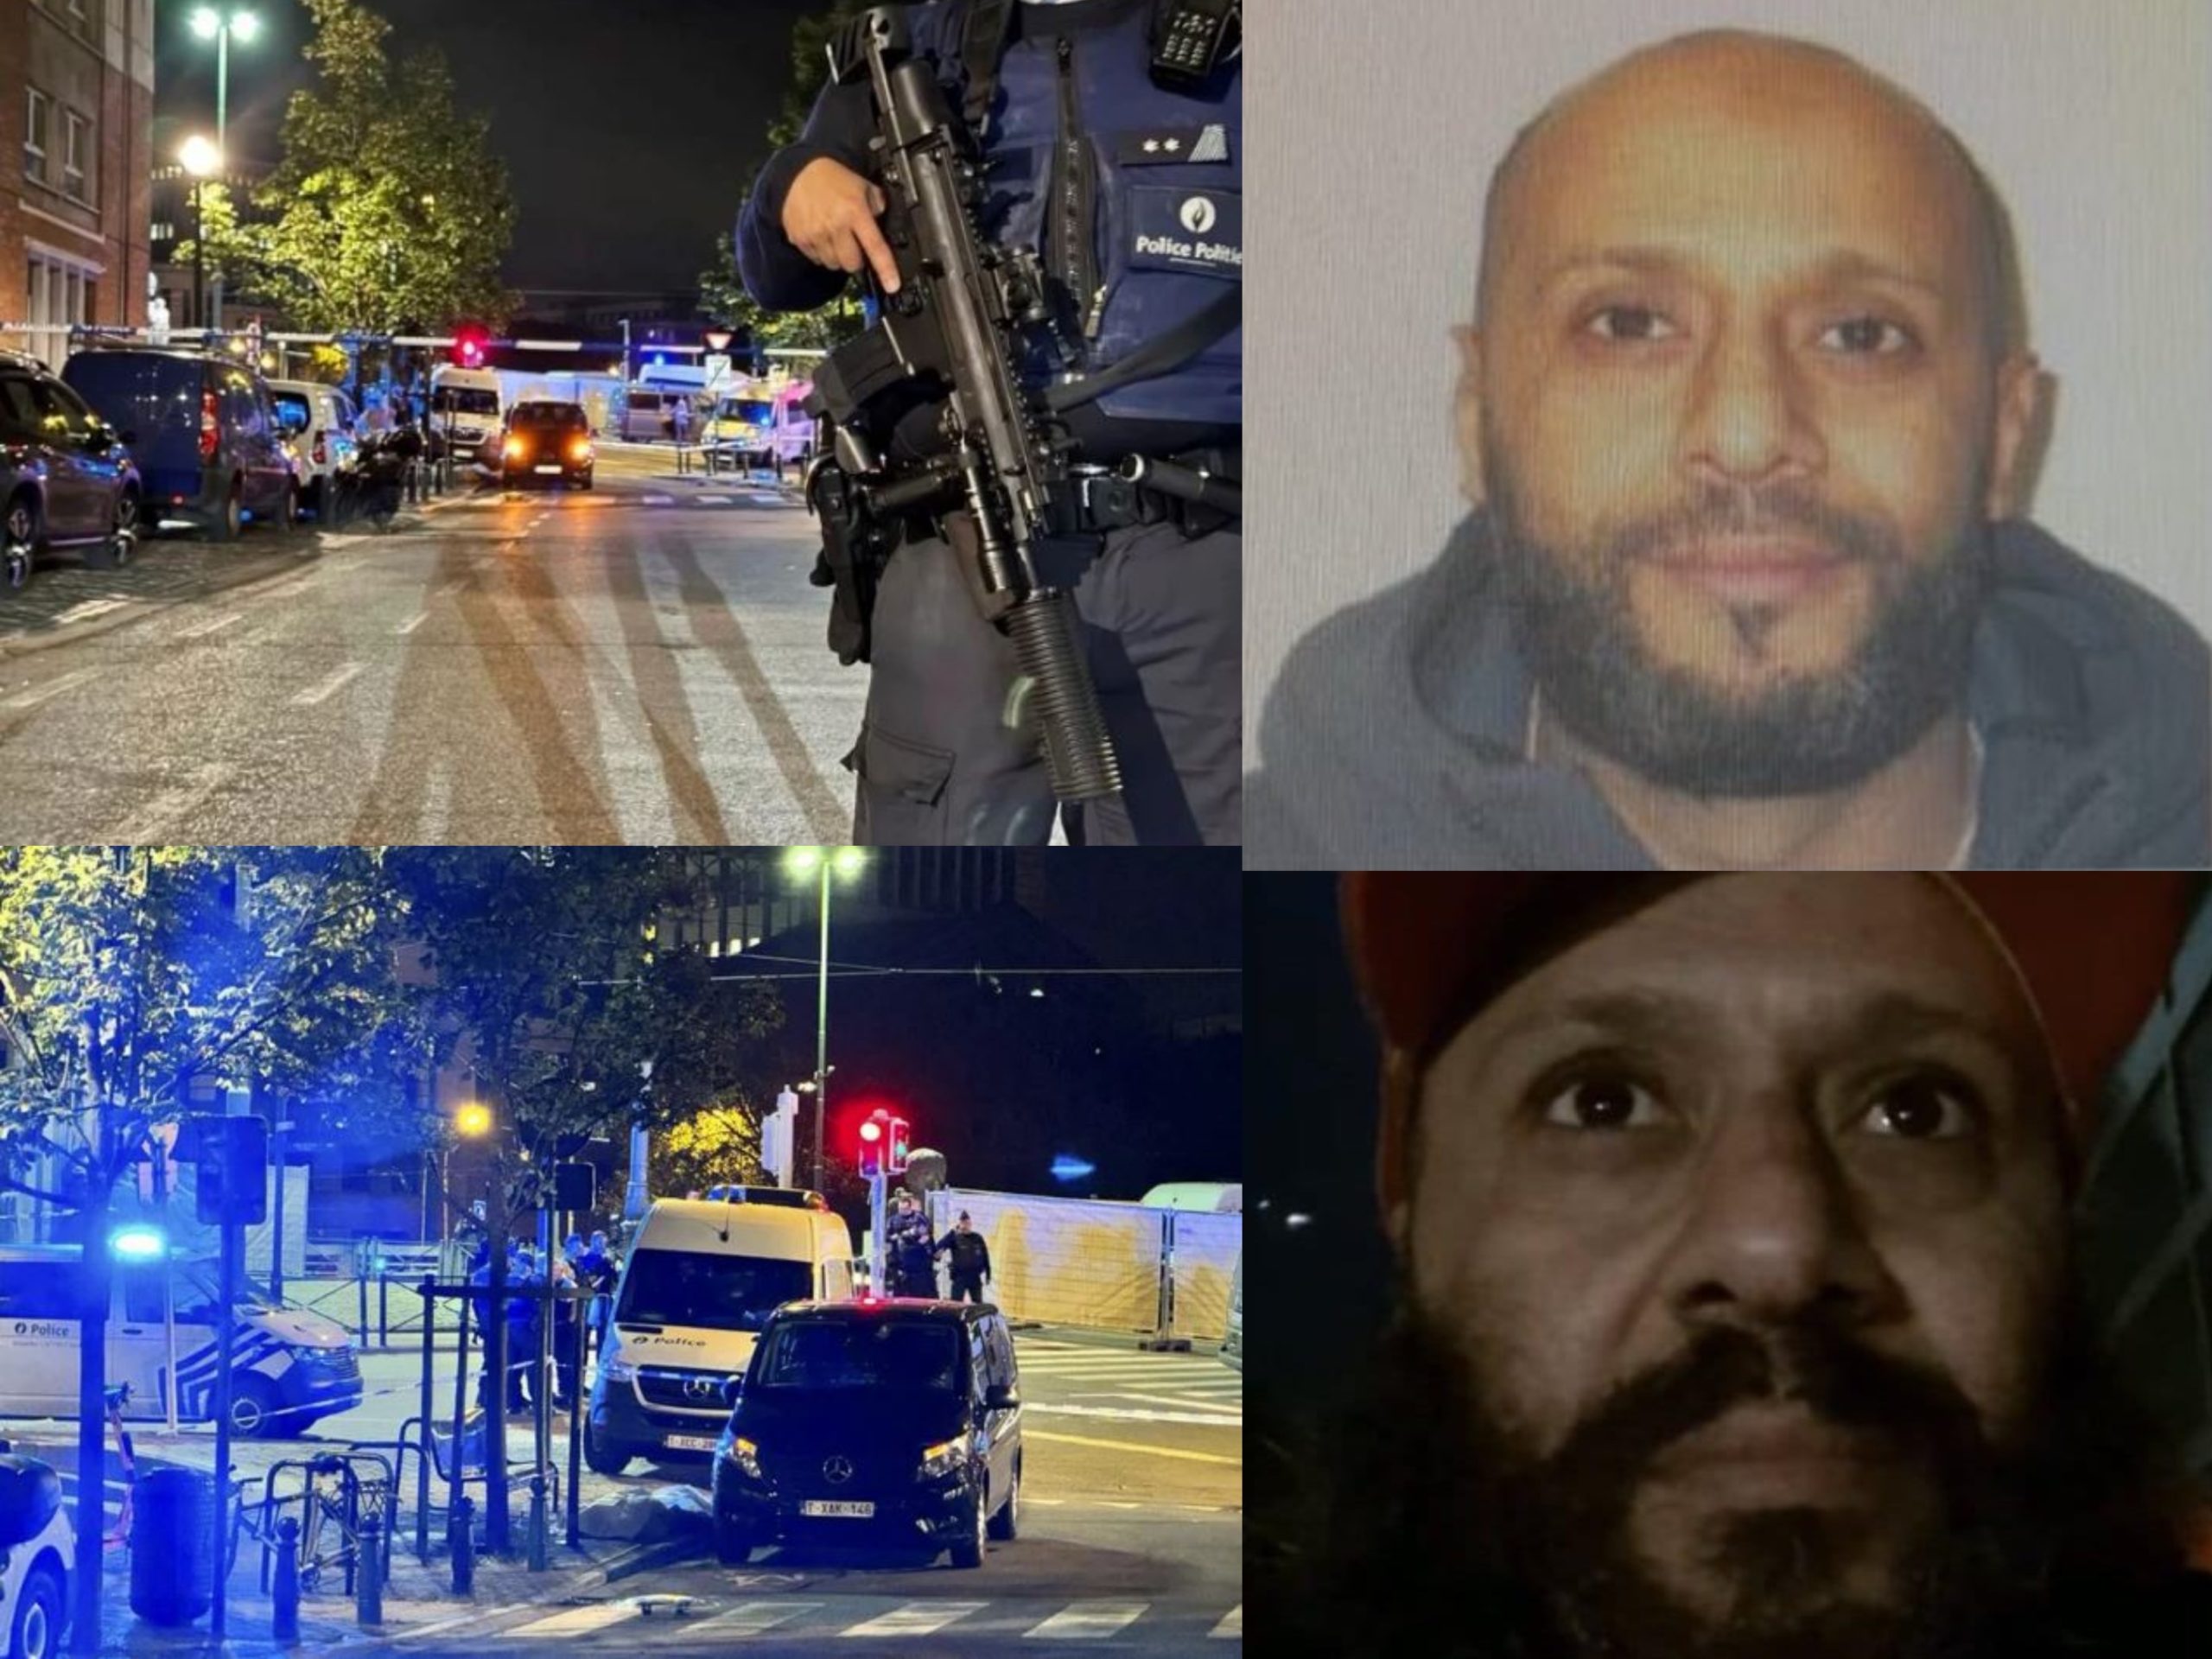 Σε κόκκινο συναγερμό οι Βρυξέλλες μετά την φονική επίθεση με δύο νεκρούς: Κυκλοφορεί ελεύθερος ο Τυνήσιος δράστης που δήλωσε μέλος του ISIS